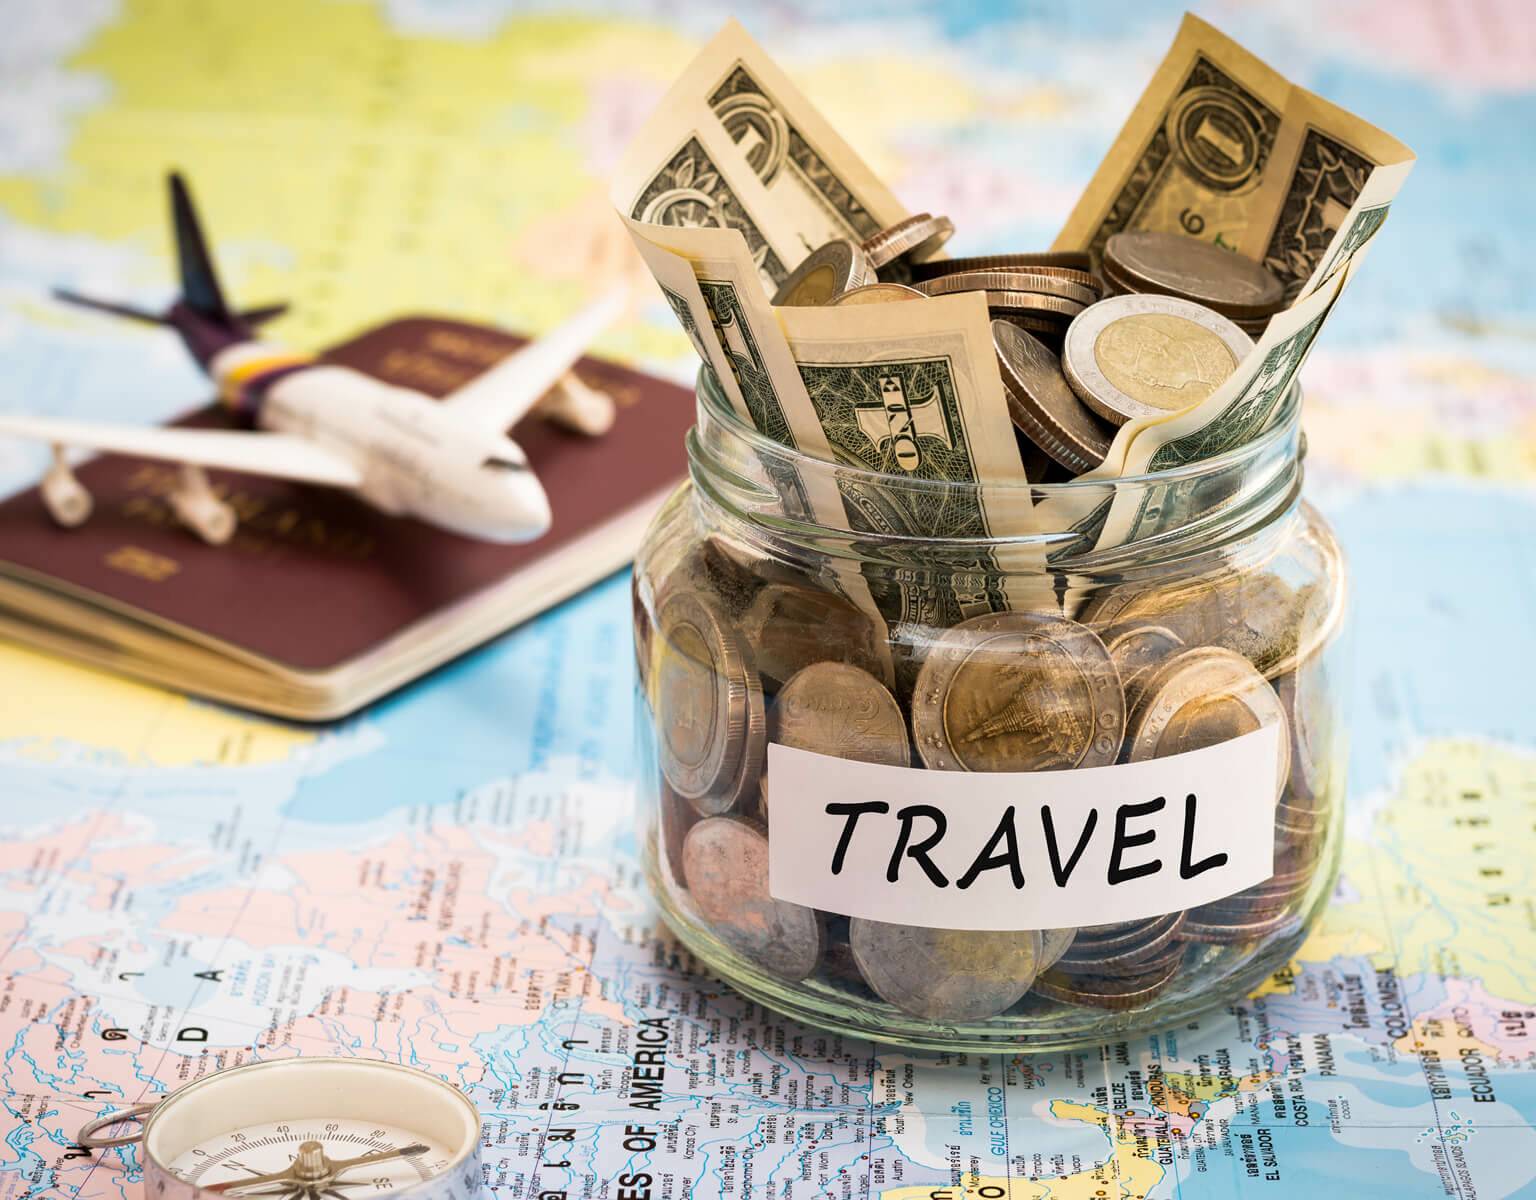 Ein Weckglas mit Scheinen und Münzen gefüllt steht auf einer Weltkarte, dahinter Reisepass und Mini-Flugzeug.